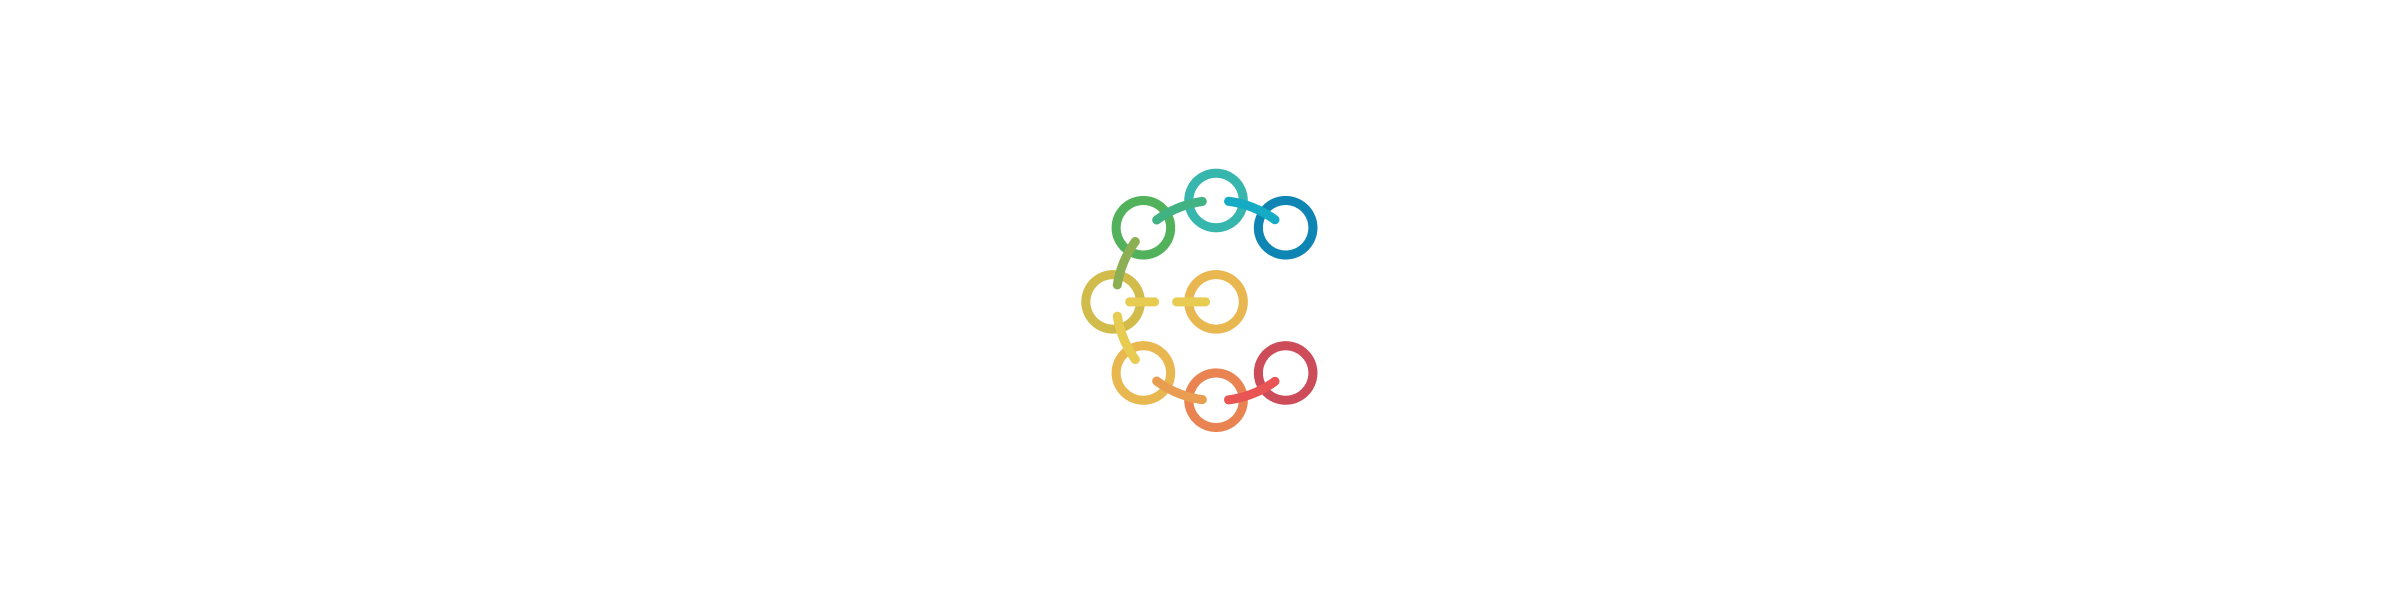 egatin logo design colorful variation